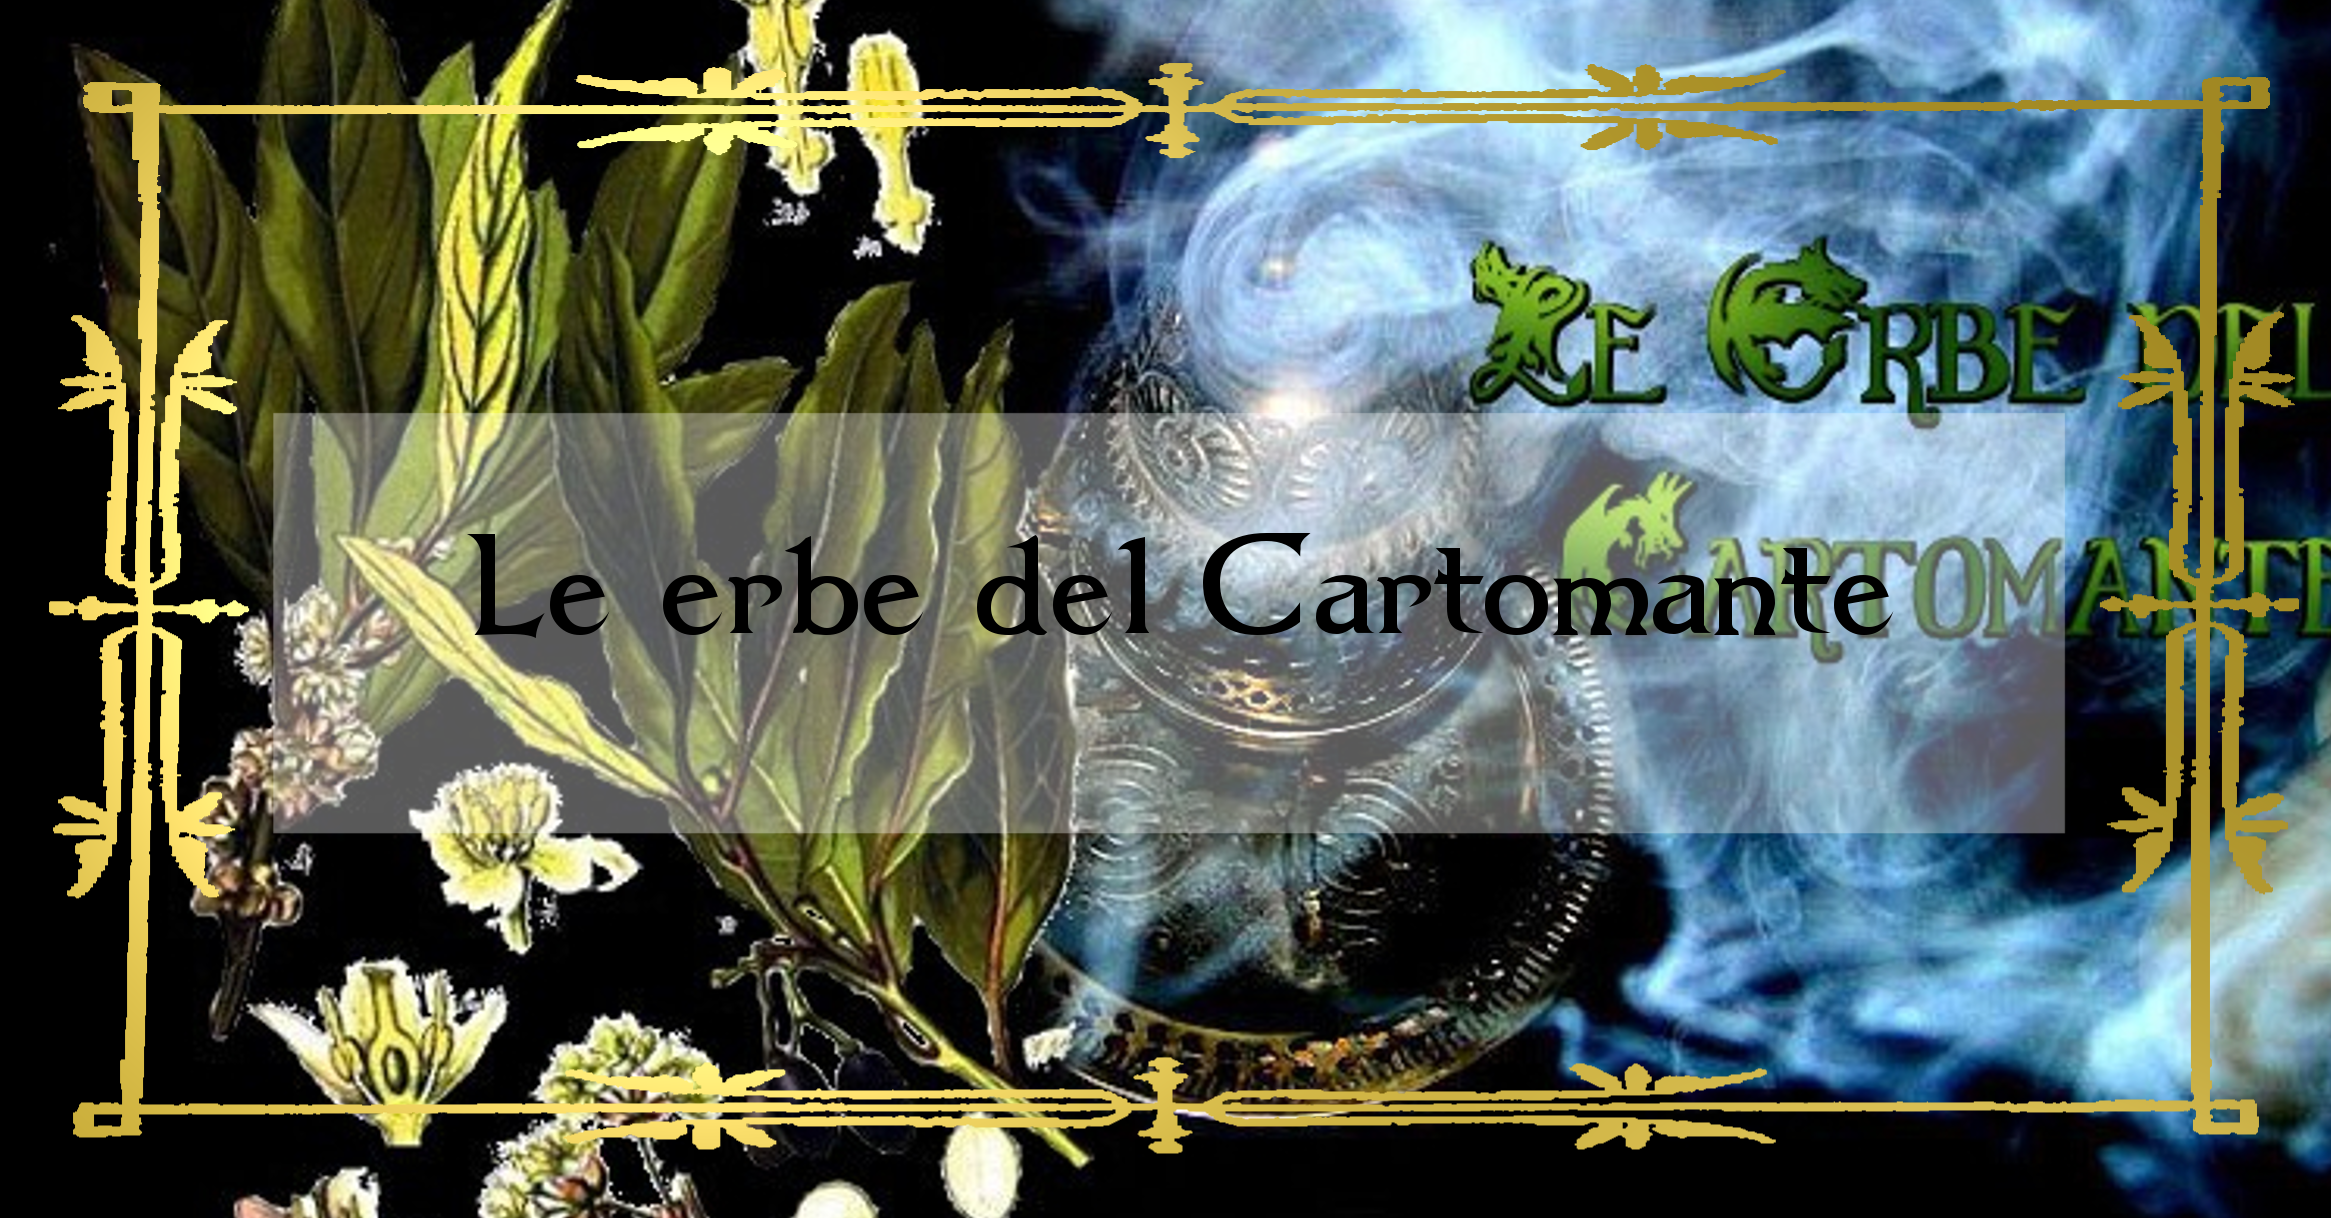 Le erbe del Cartomante